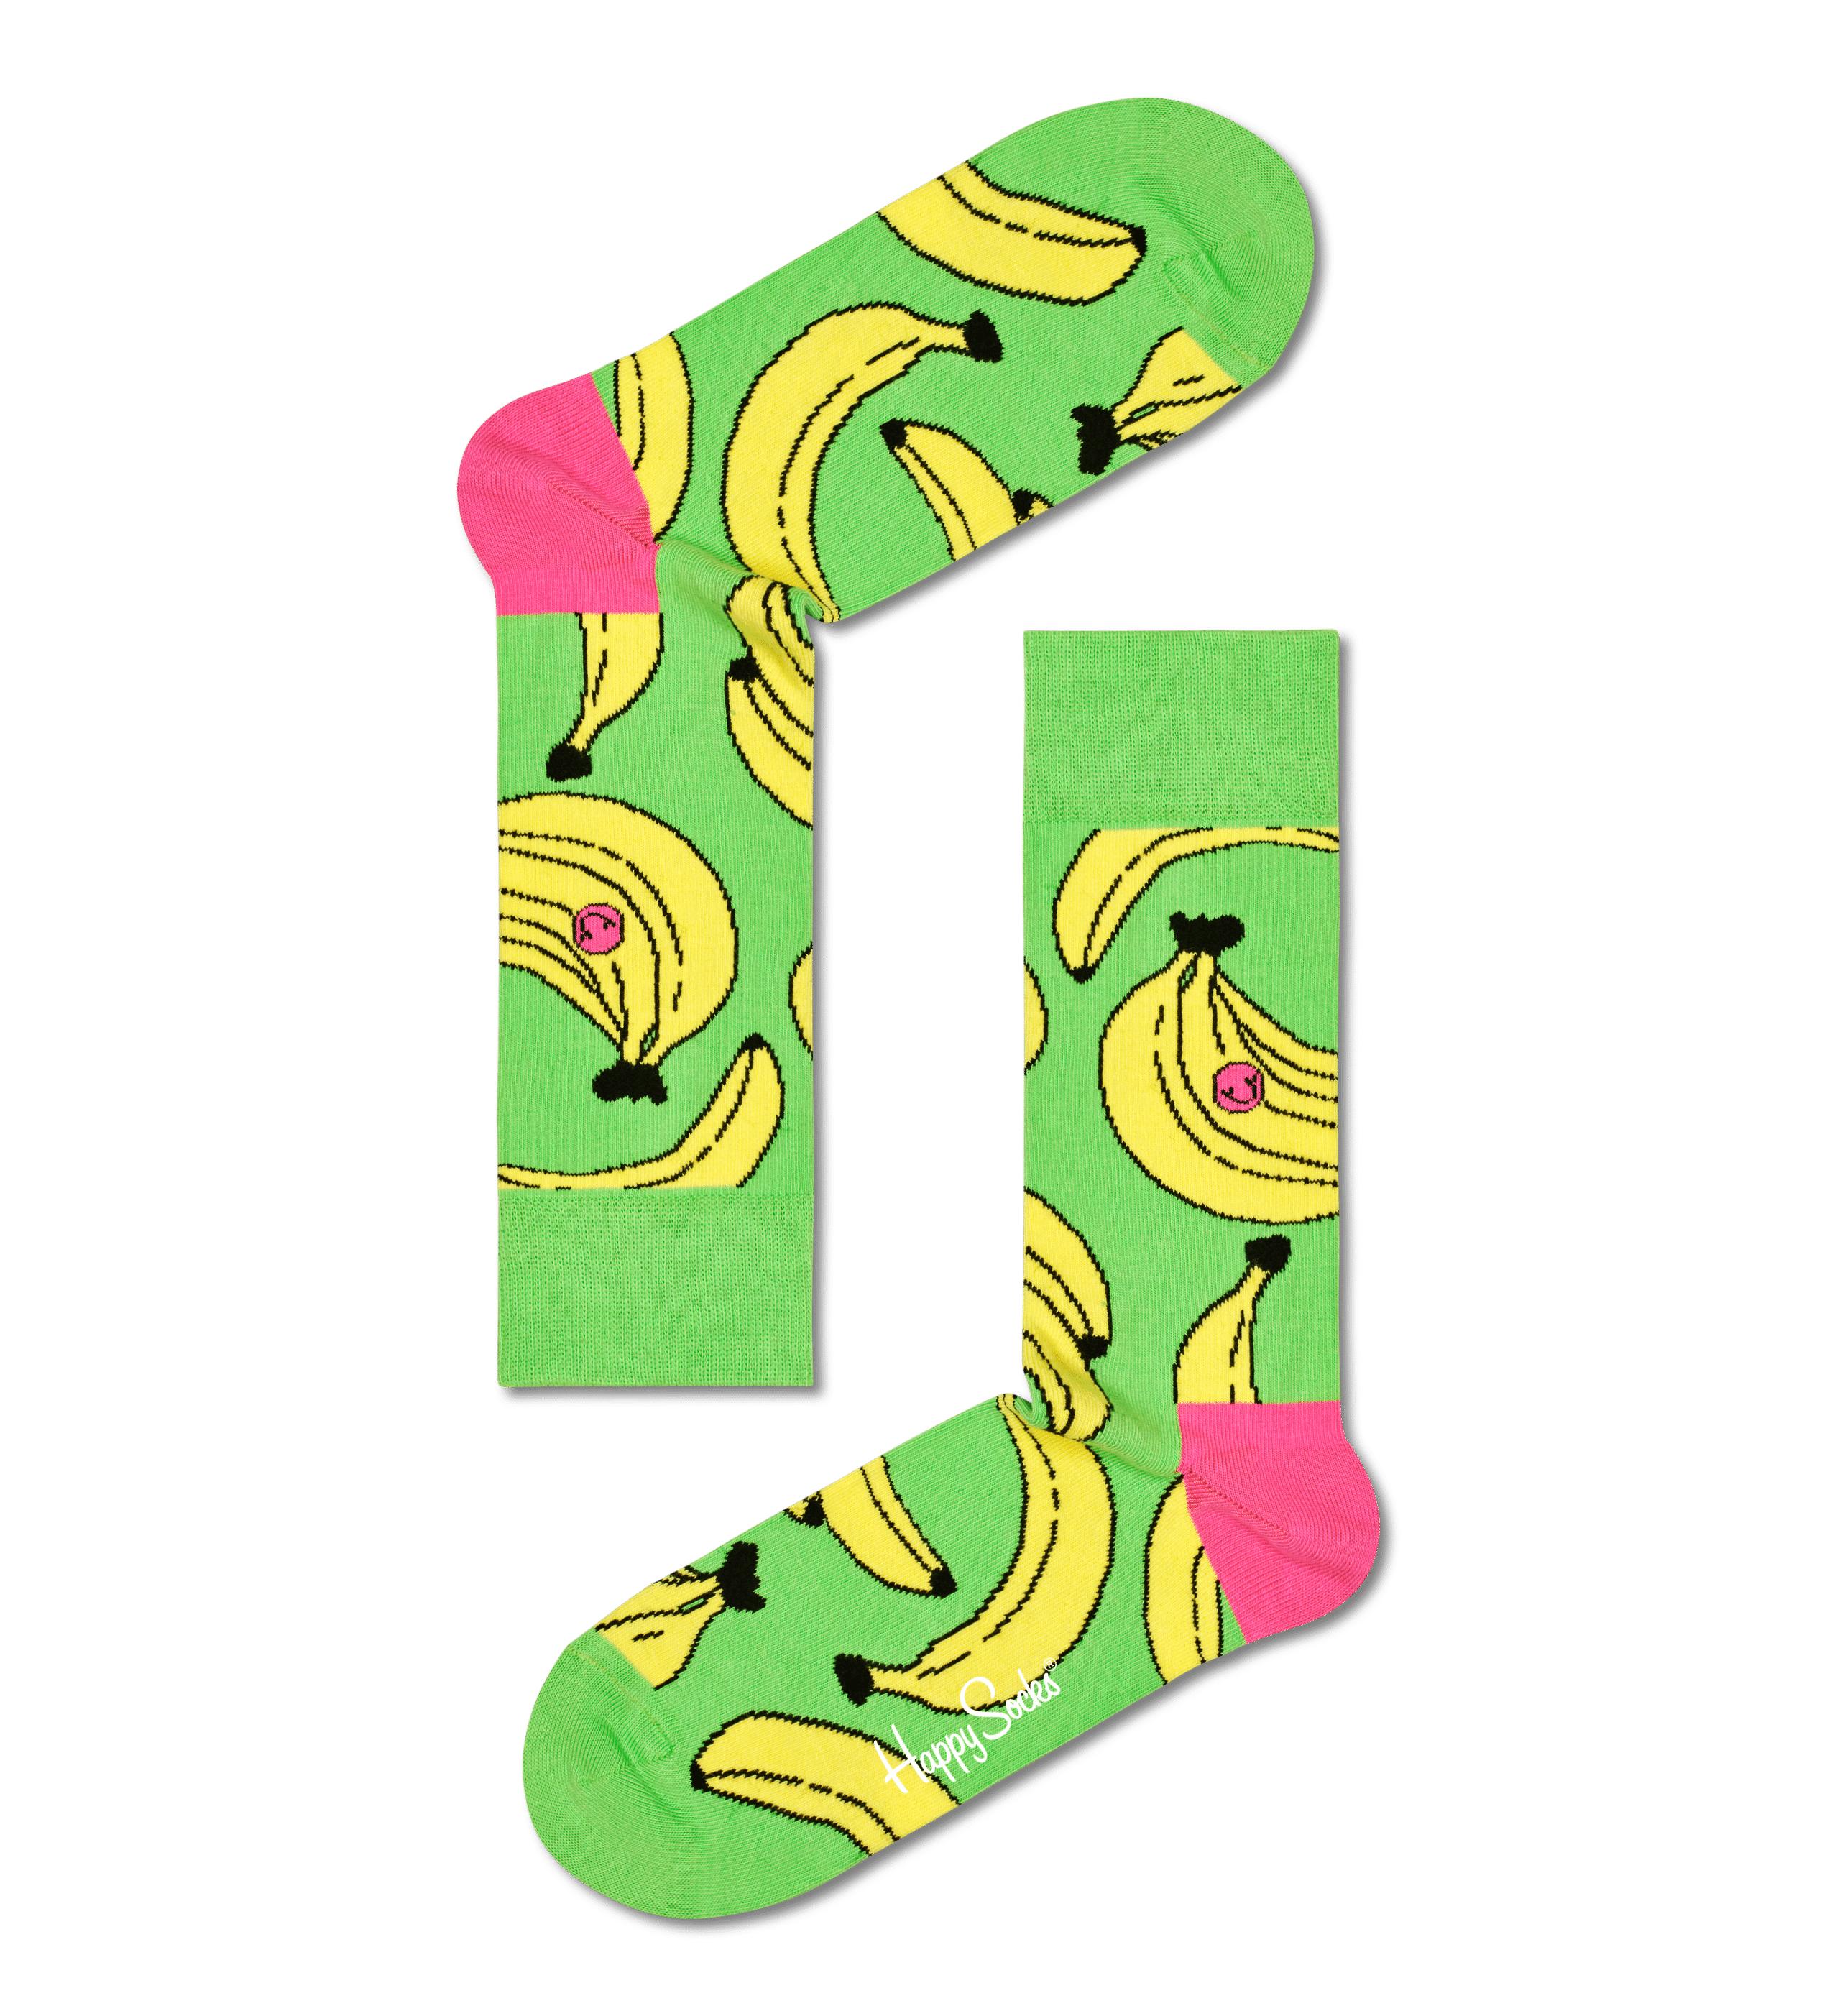 Banana – Banana green